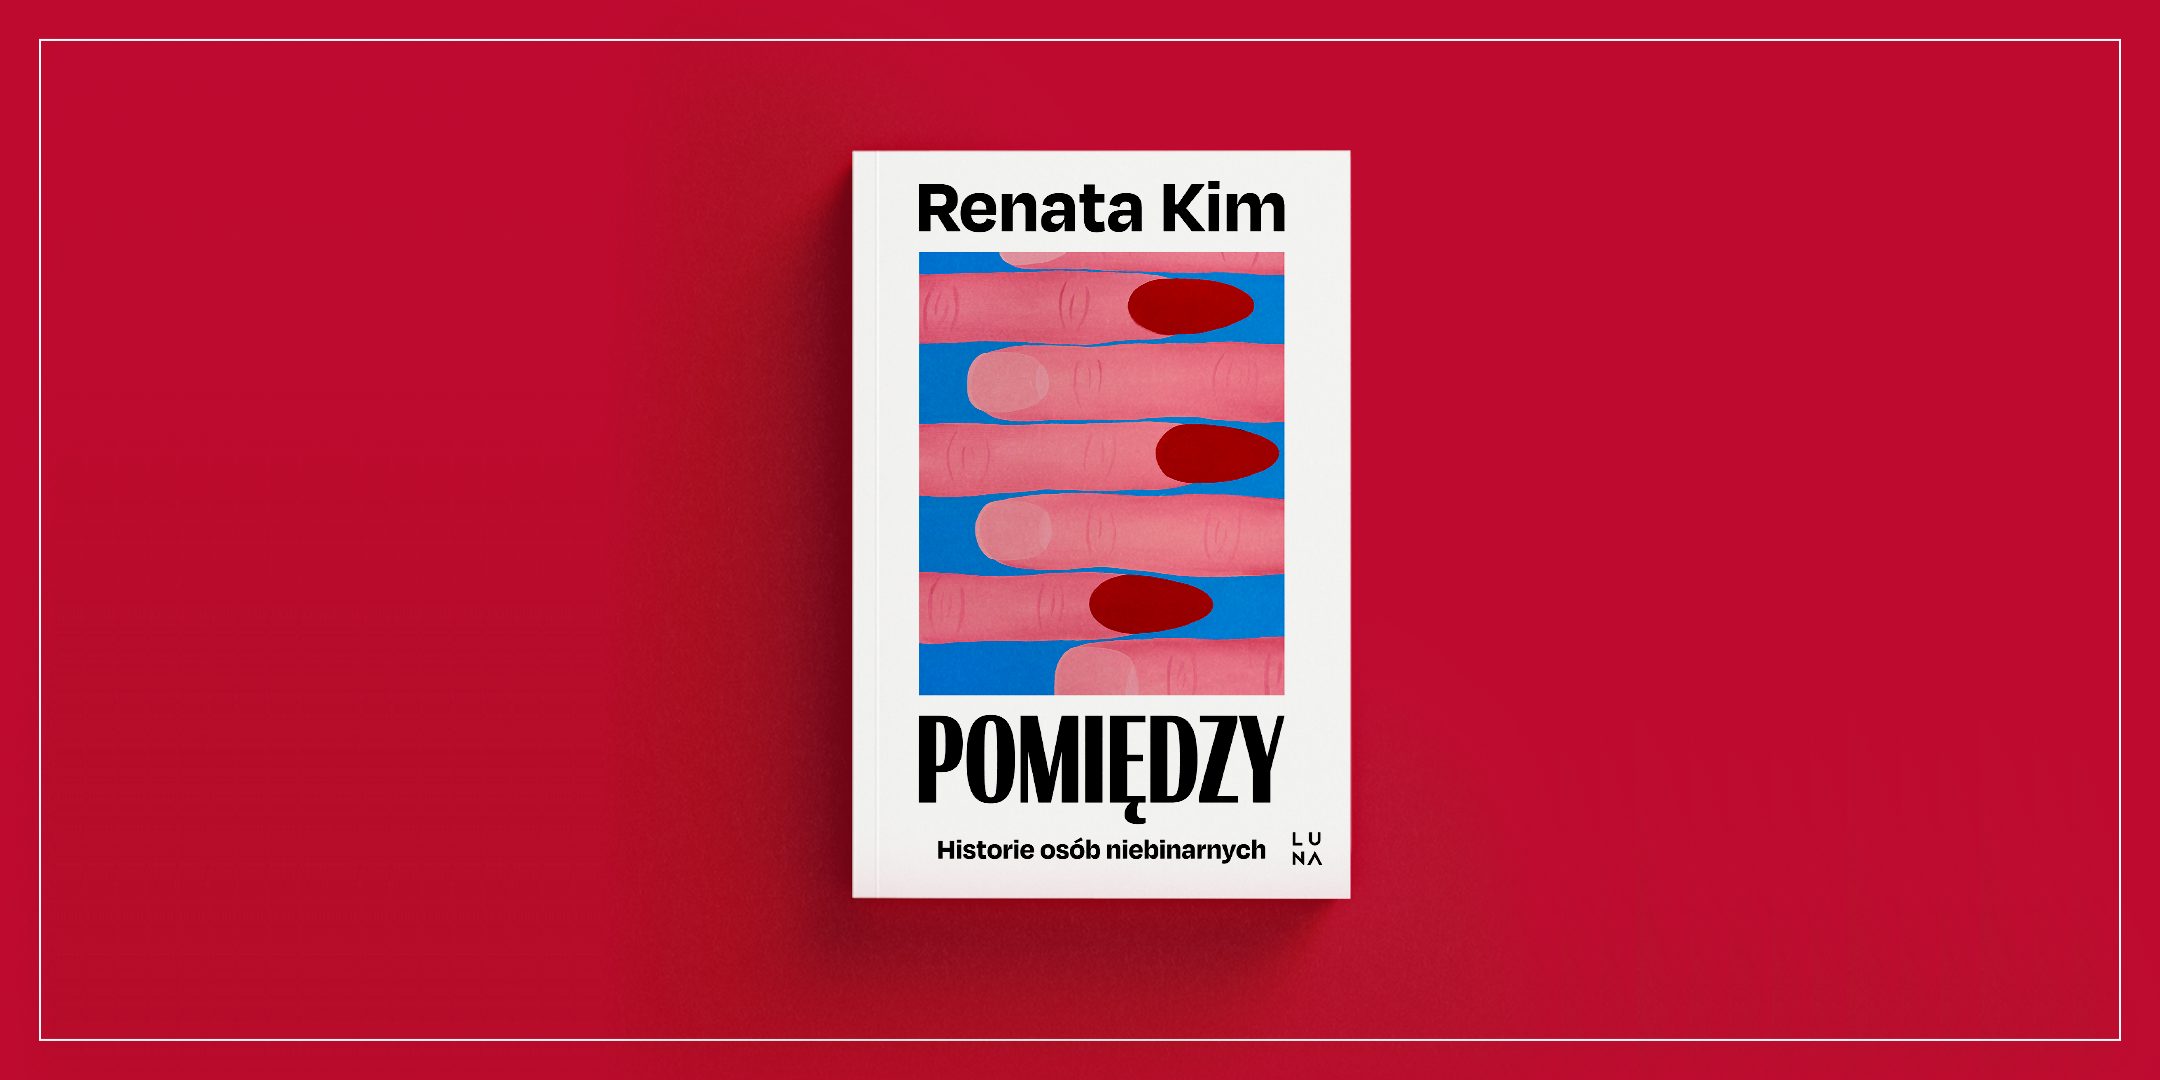 Na czerwonym tle okładka książki: przeplatane palce, z lewej strony ze szpiczastymi paznokciami pomalowanymi na czerwono, z prawej ucięte krótko i niepomalowane. U góry napis „Renata Kim”, na dole „Pomiędzy”, poniżej „Historie osób niebinarnych” i logo wydawnictwa Luna